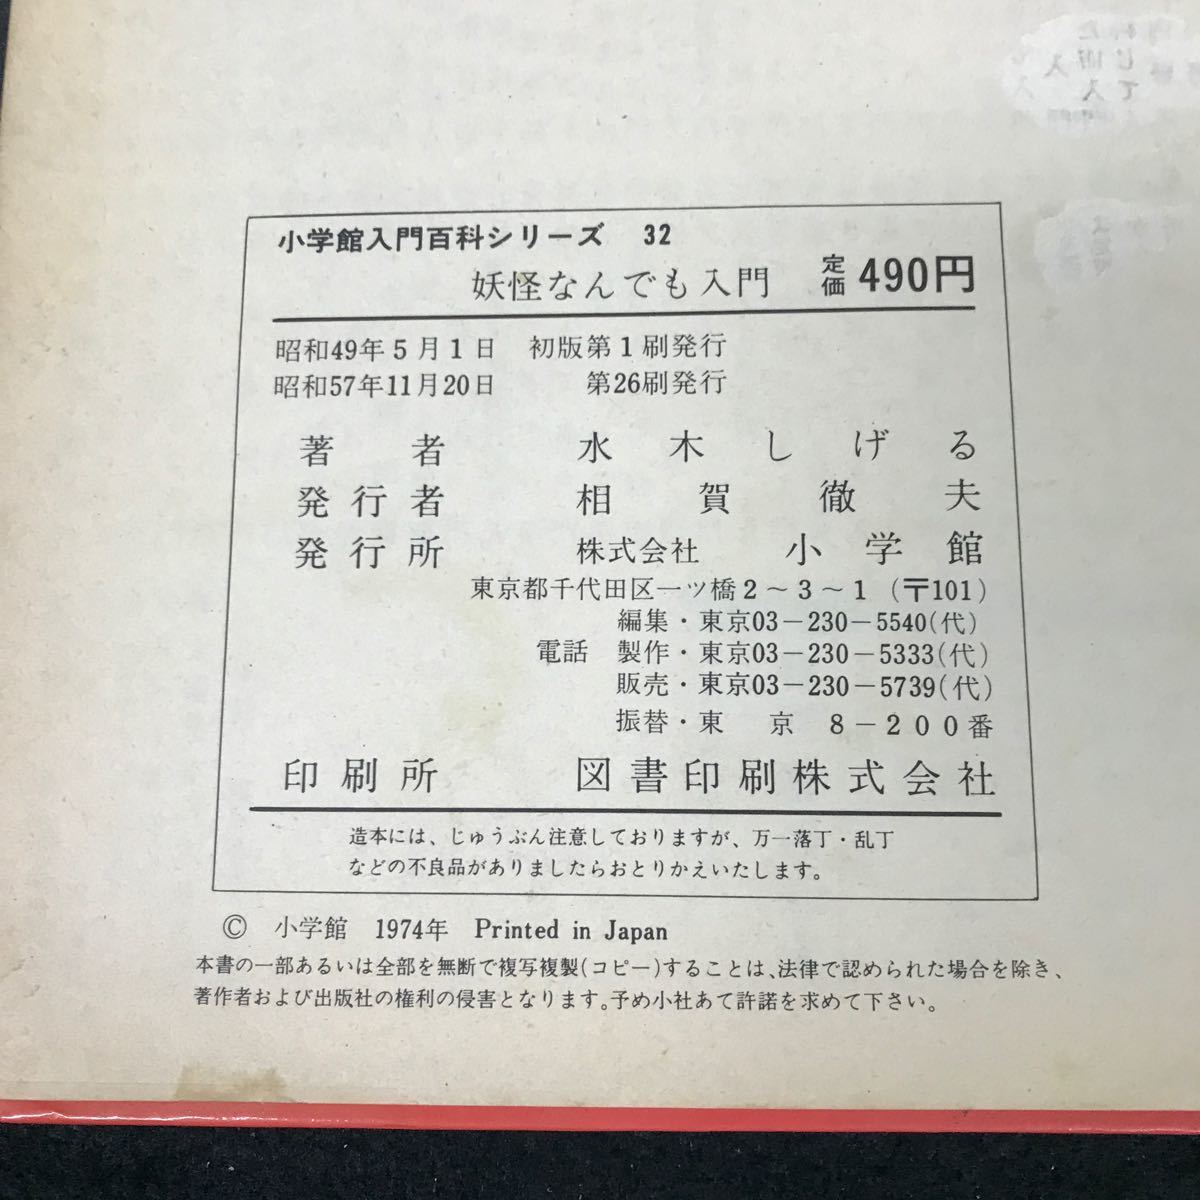 i-430 Shogakukan Inc. введение различные предметы серии 32.... тоже введение автор / вода дерево ... акционерное общество Shogakukan Inc. Showa 57 год первая версия no. 26. выпуск *12